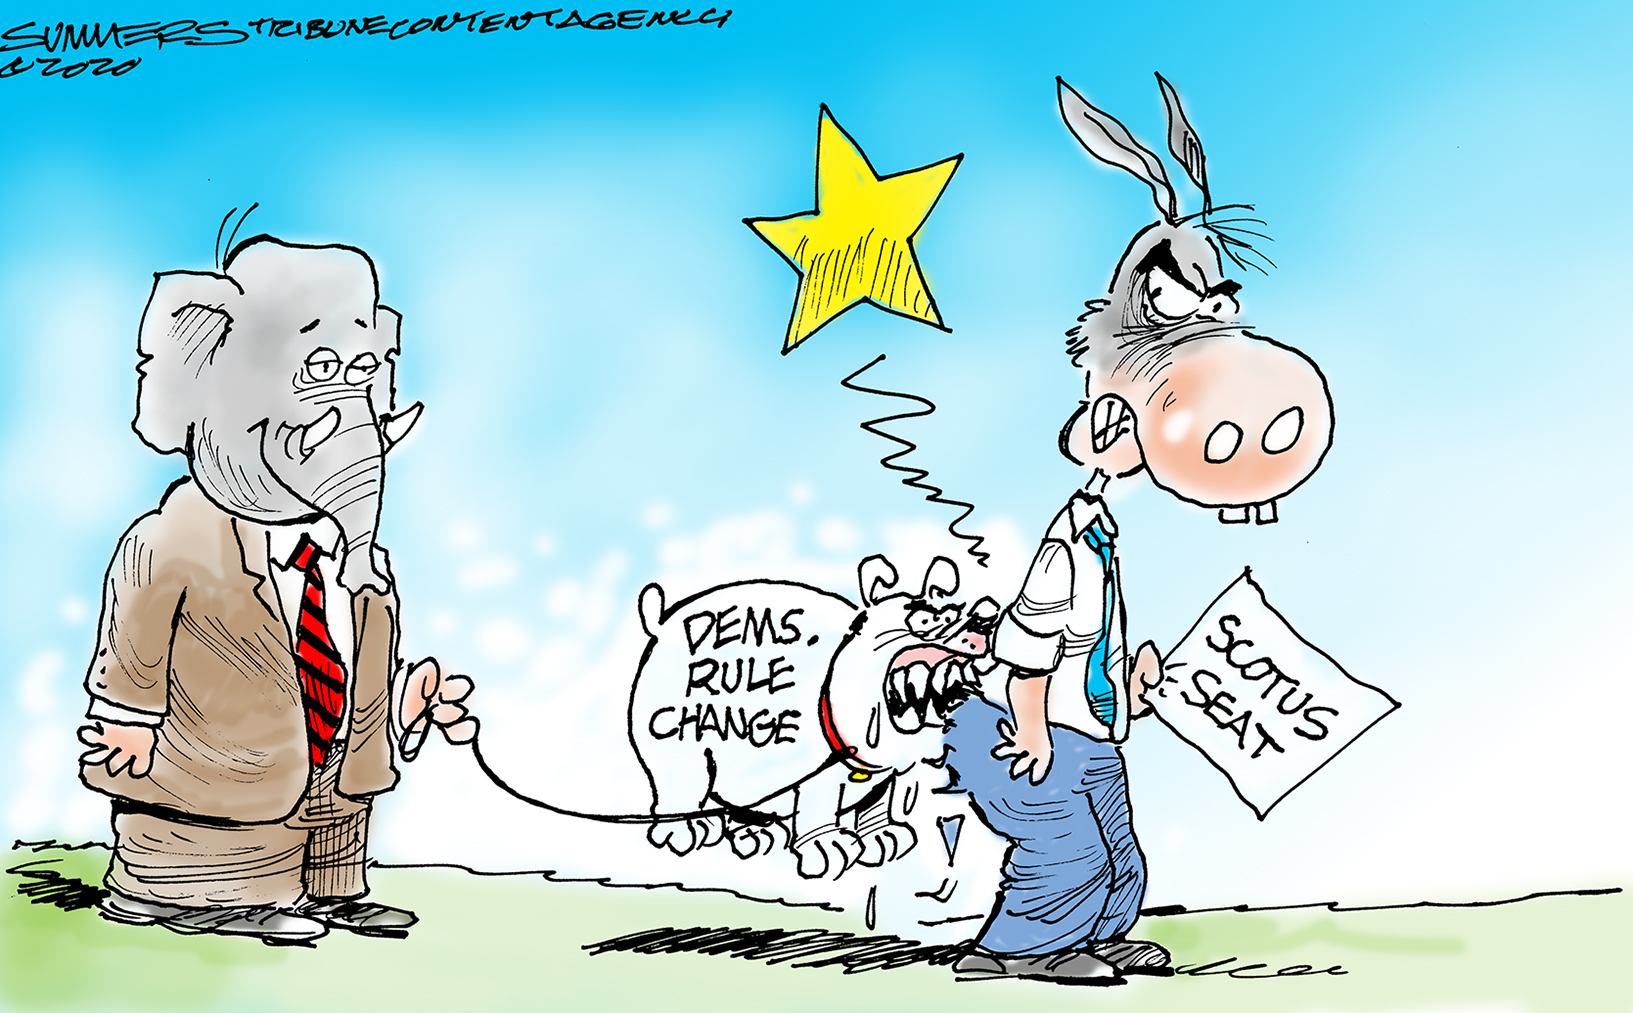 Political Cartoon U.S. SCOTUS rule change Democrats GOP